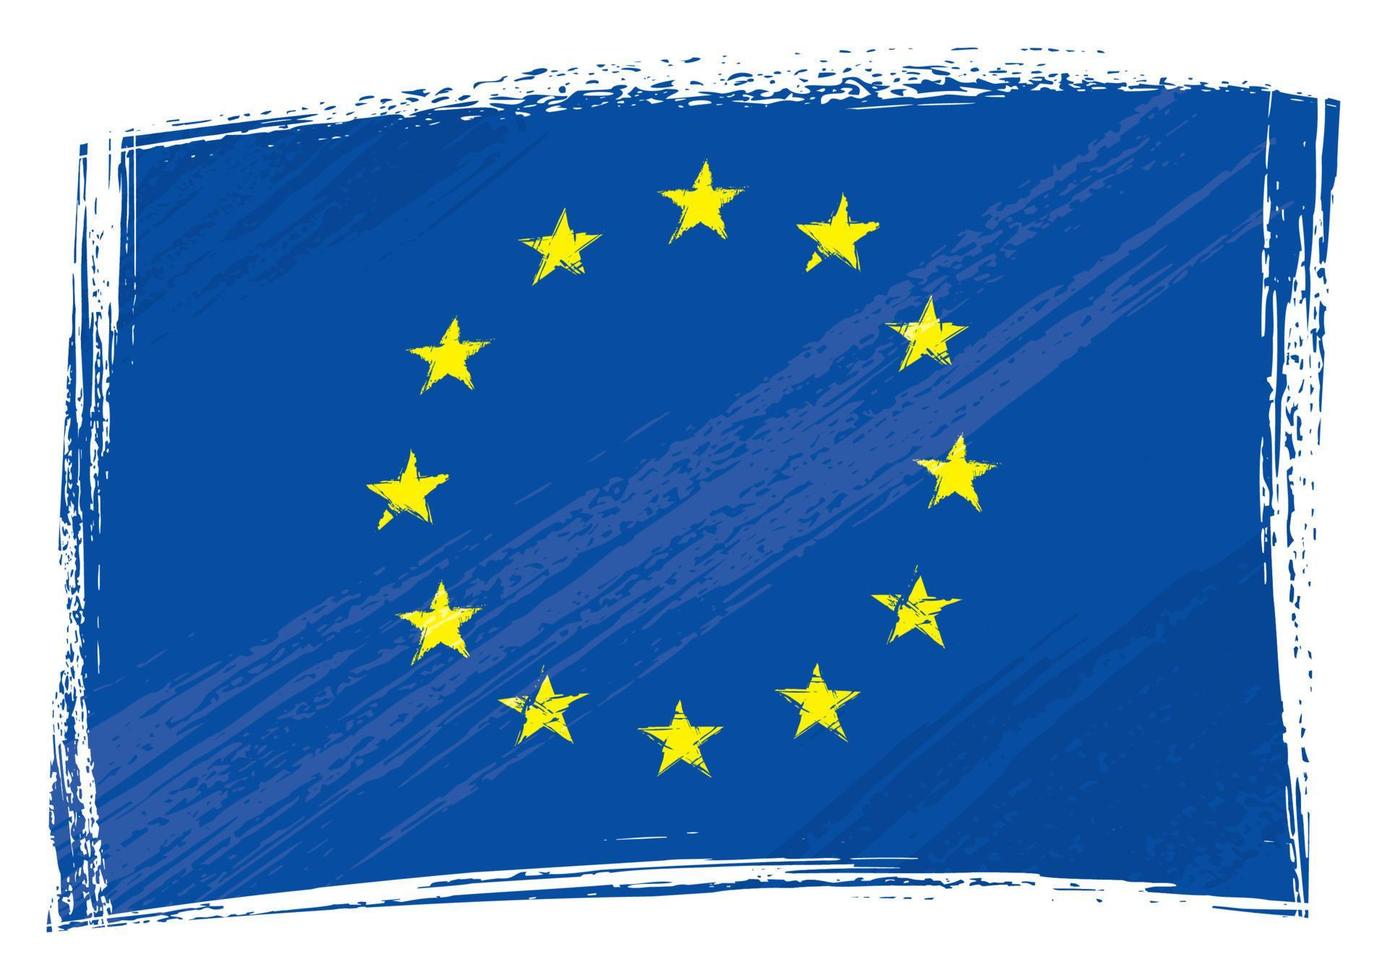 bandiera dell'unione europea grunge vettore